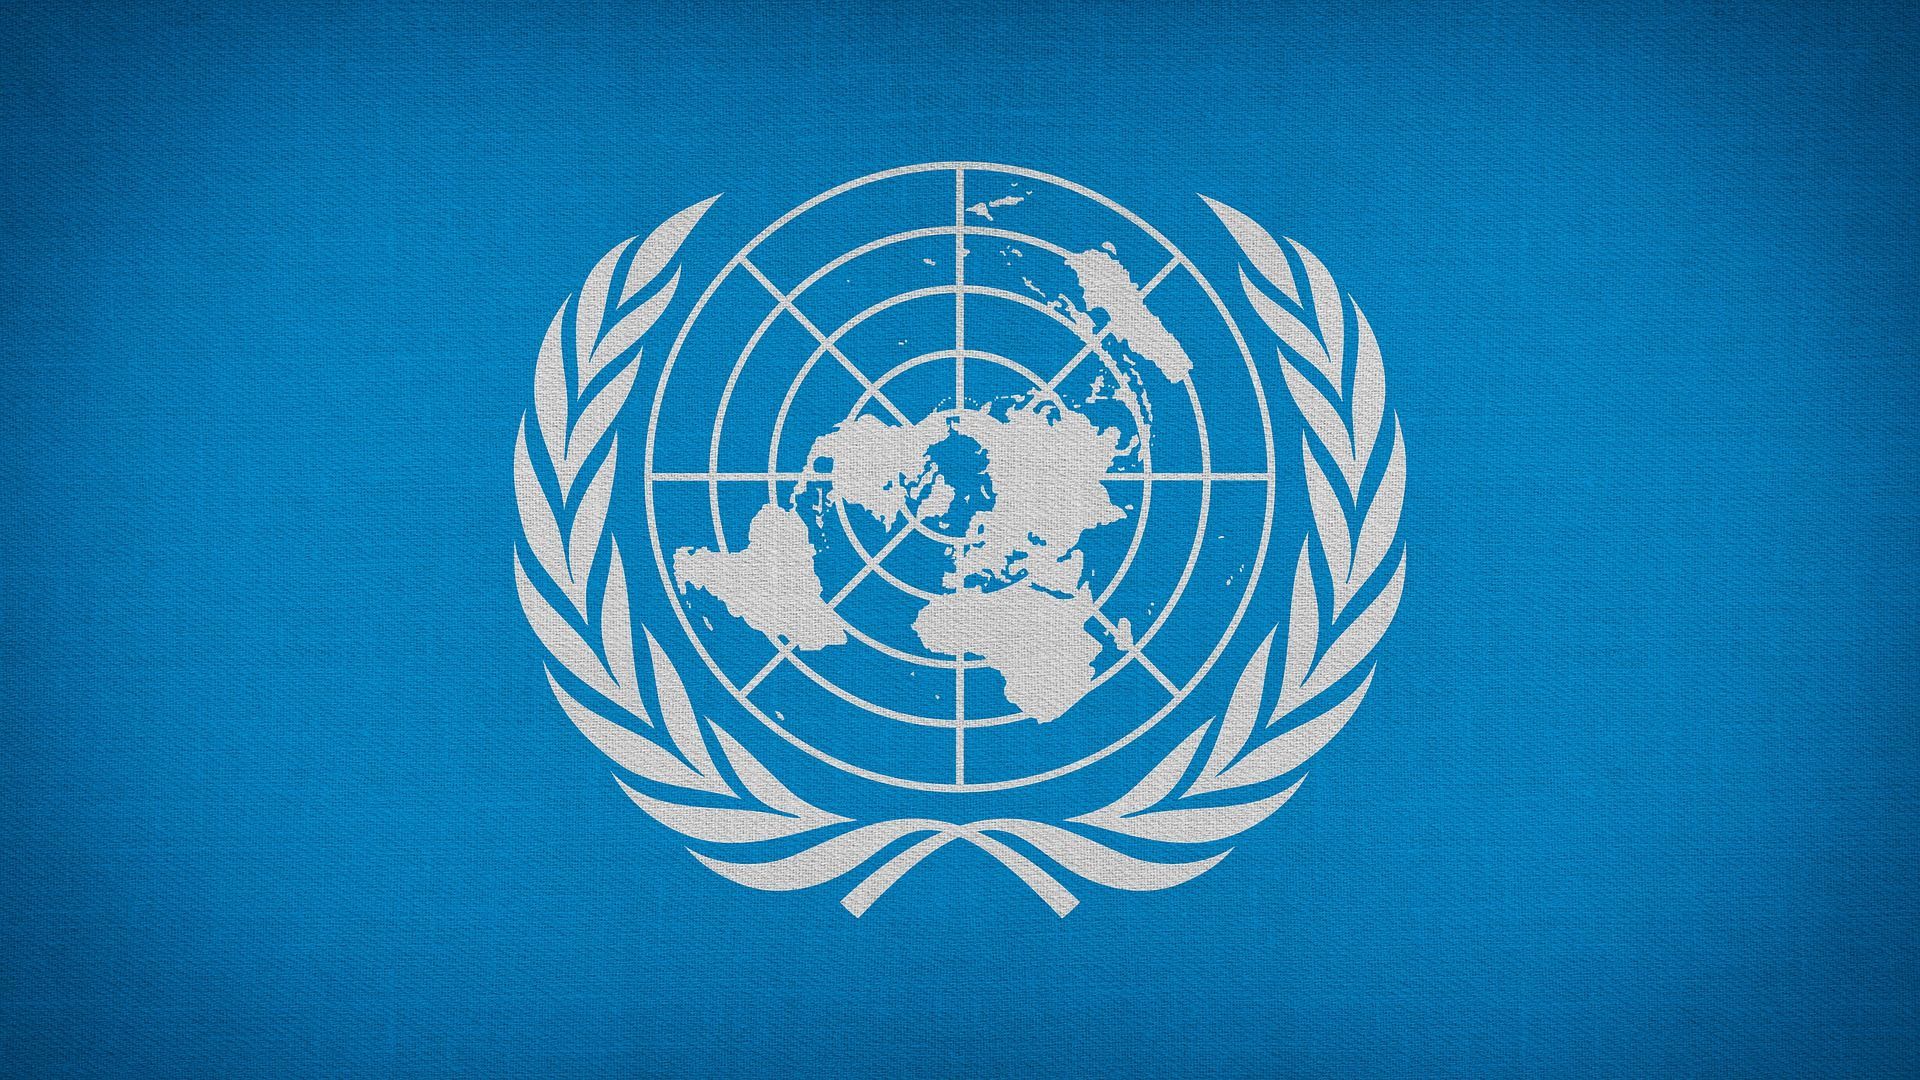 Ркик оон. Организация Объединенных наций (ООН). Флаг ООН. Совет безопасности ООН логотип. День ООН.